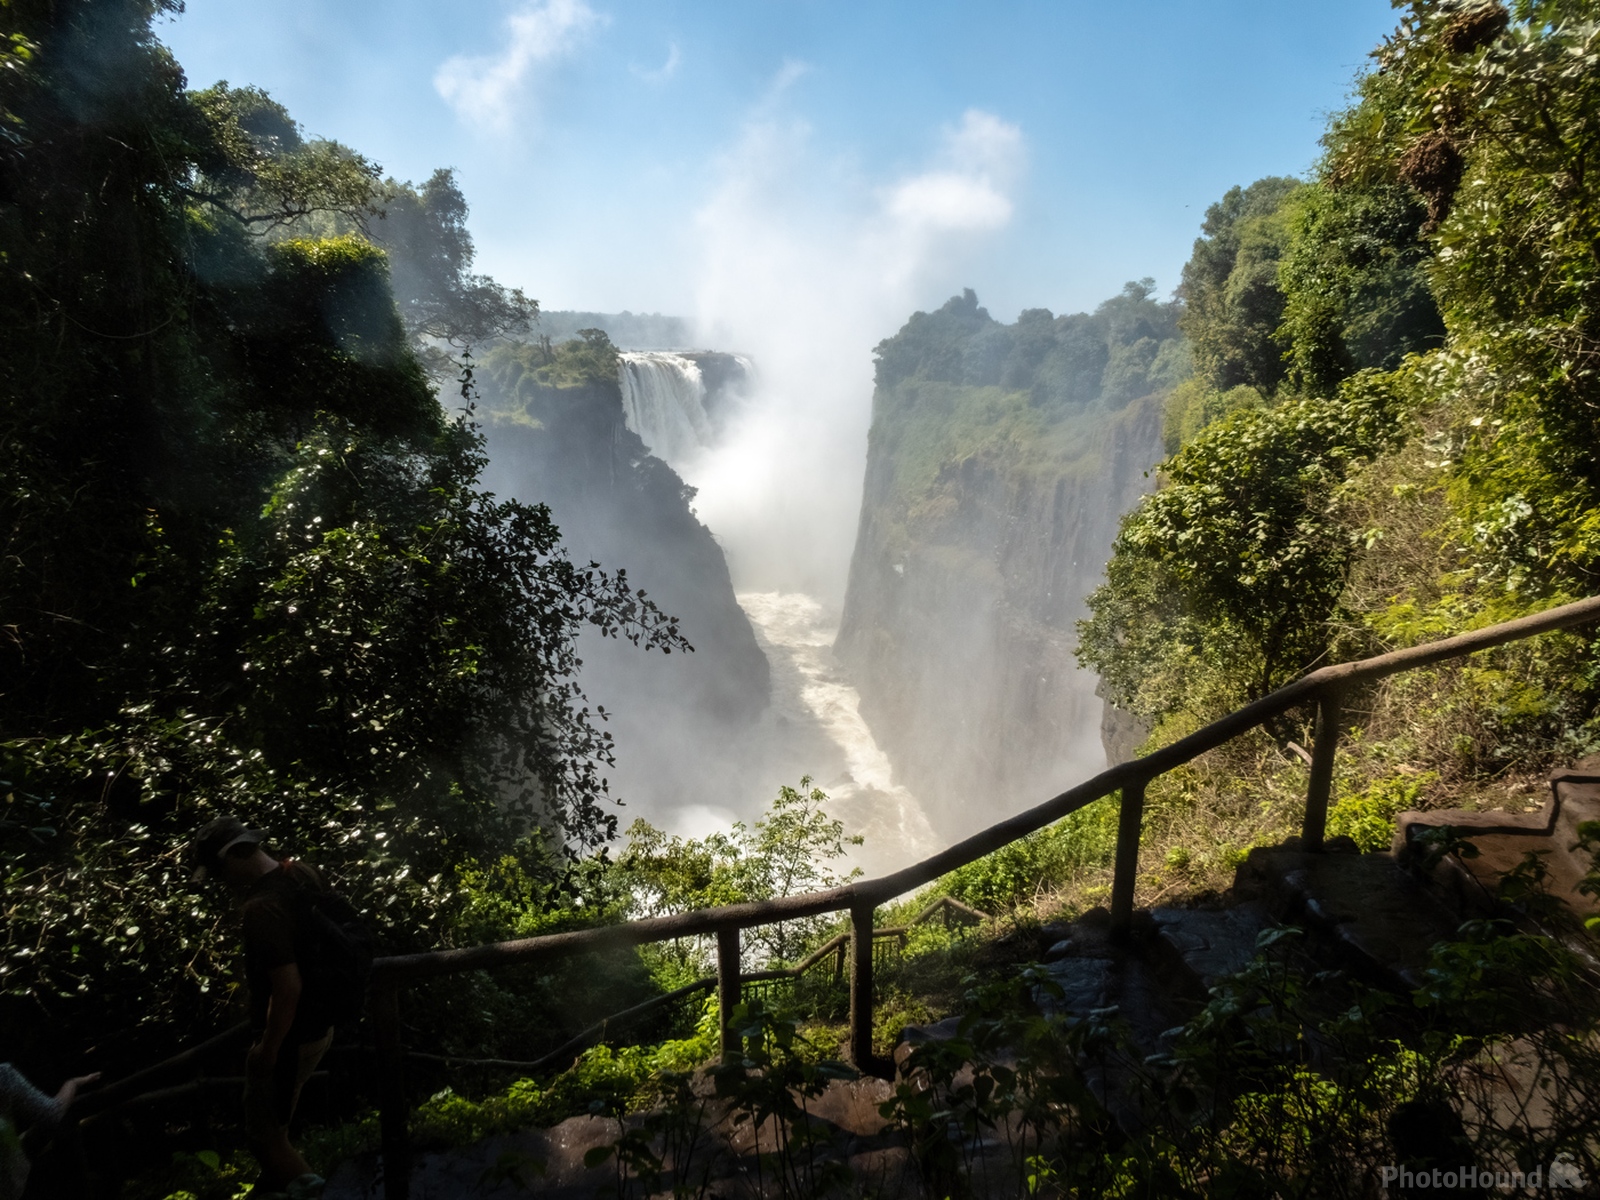 Image of Victoria Falls - Mosi-oa-Tunya - Zimbabwe by Nancy Nederlof